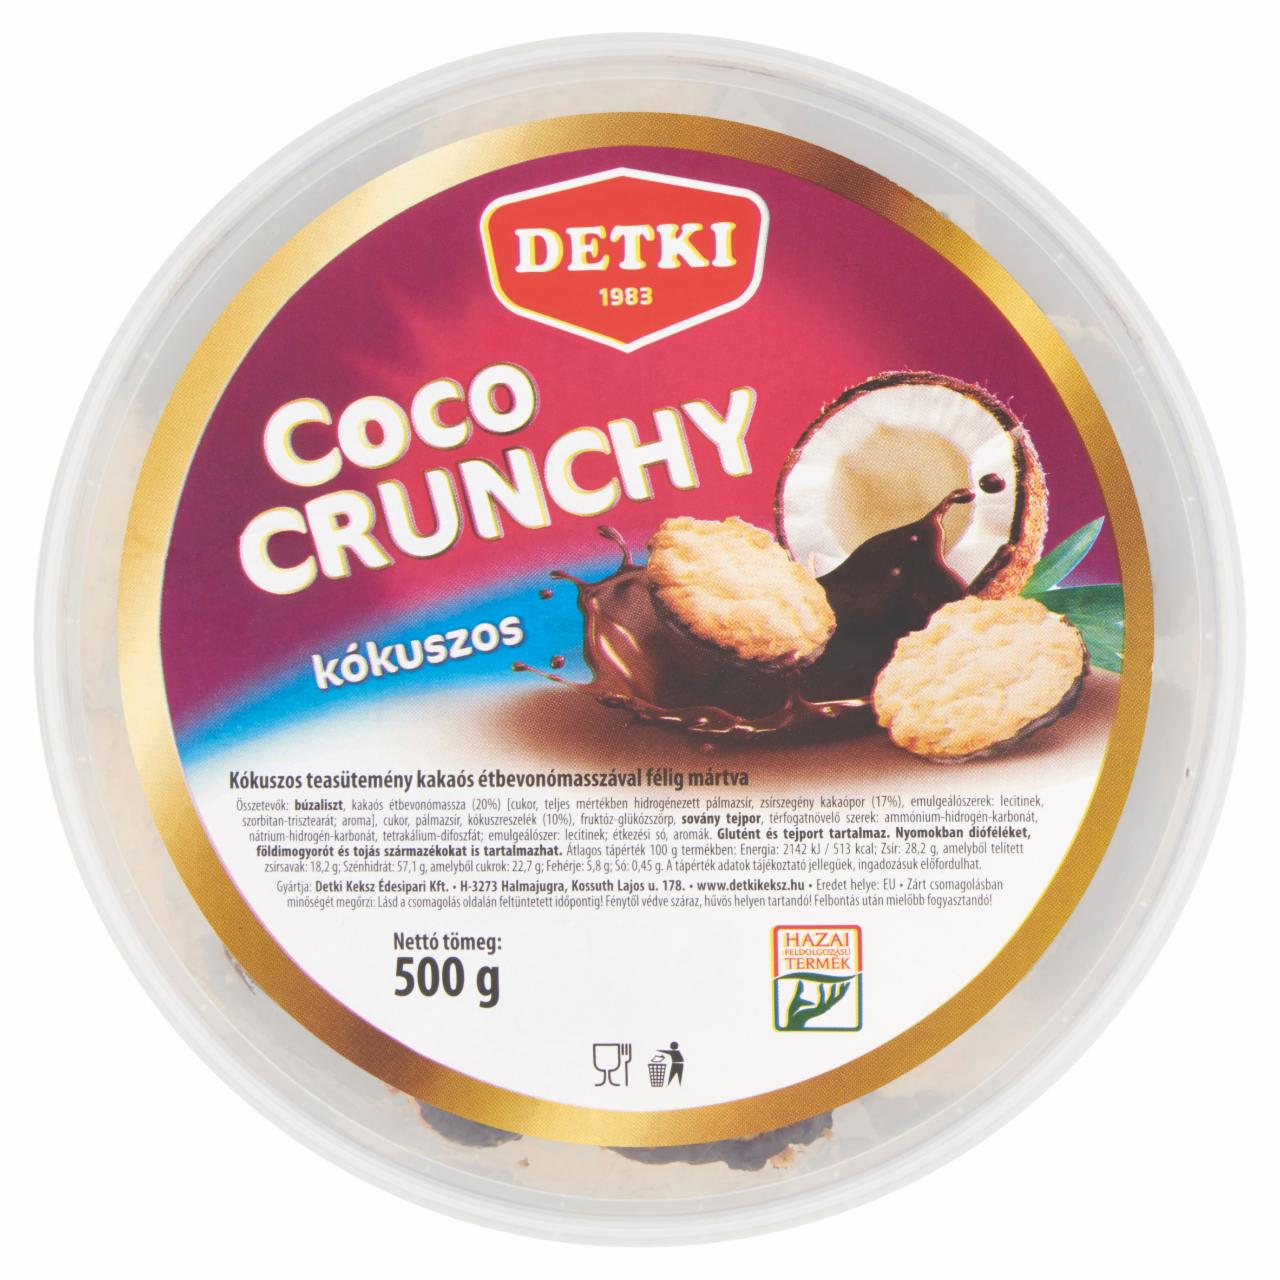 Képek - Detki Coco Crunchy kókuszos teasütemény kakaós étbevonómasszával félig mártva 500 g